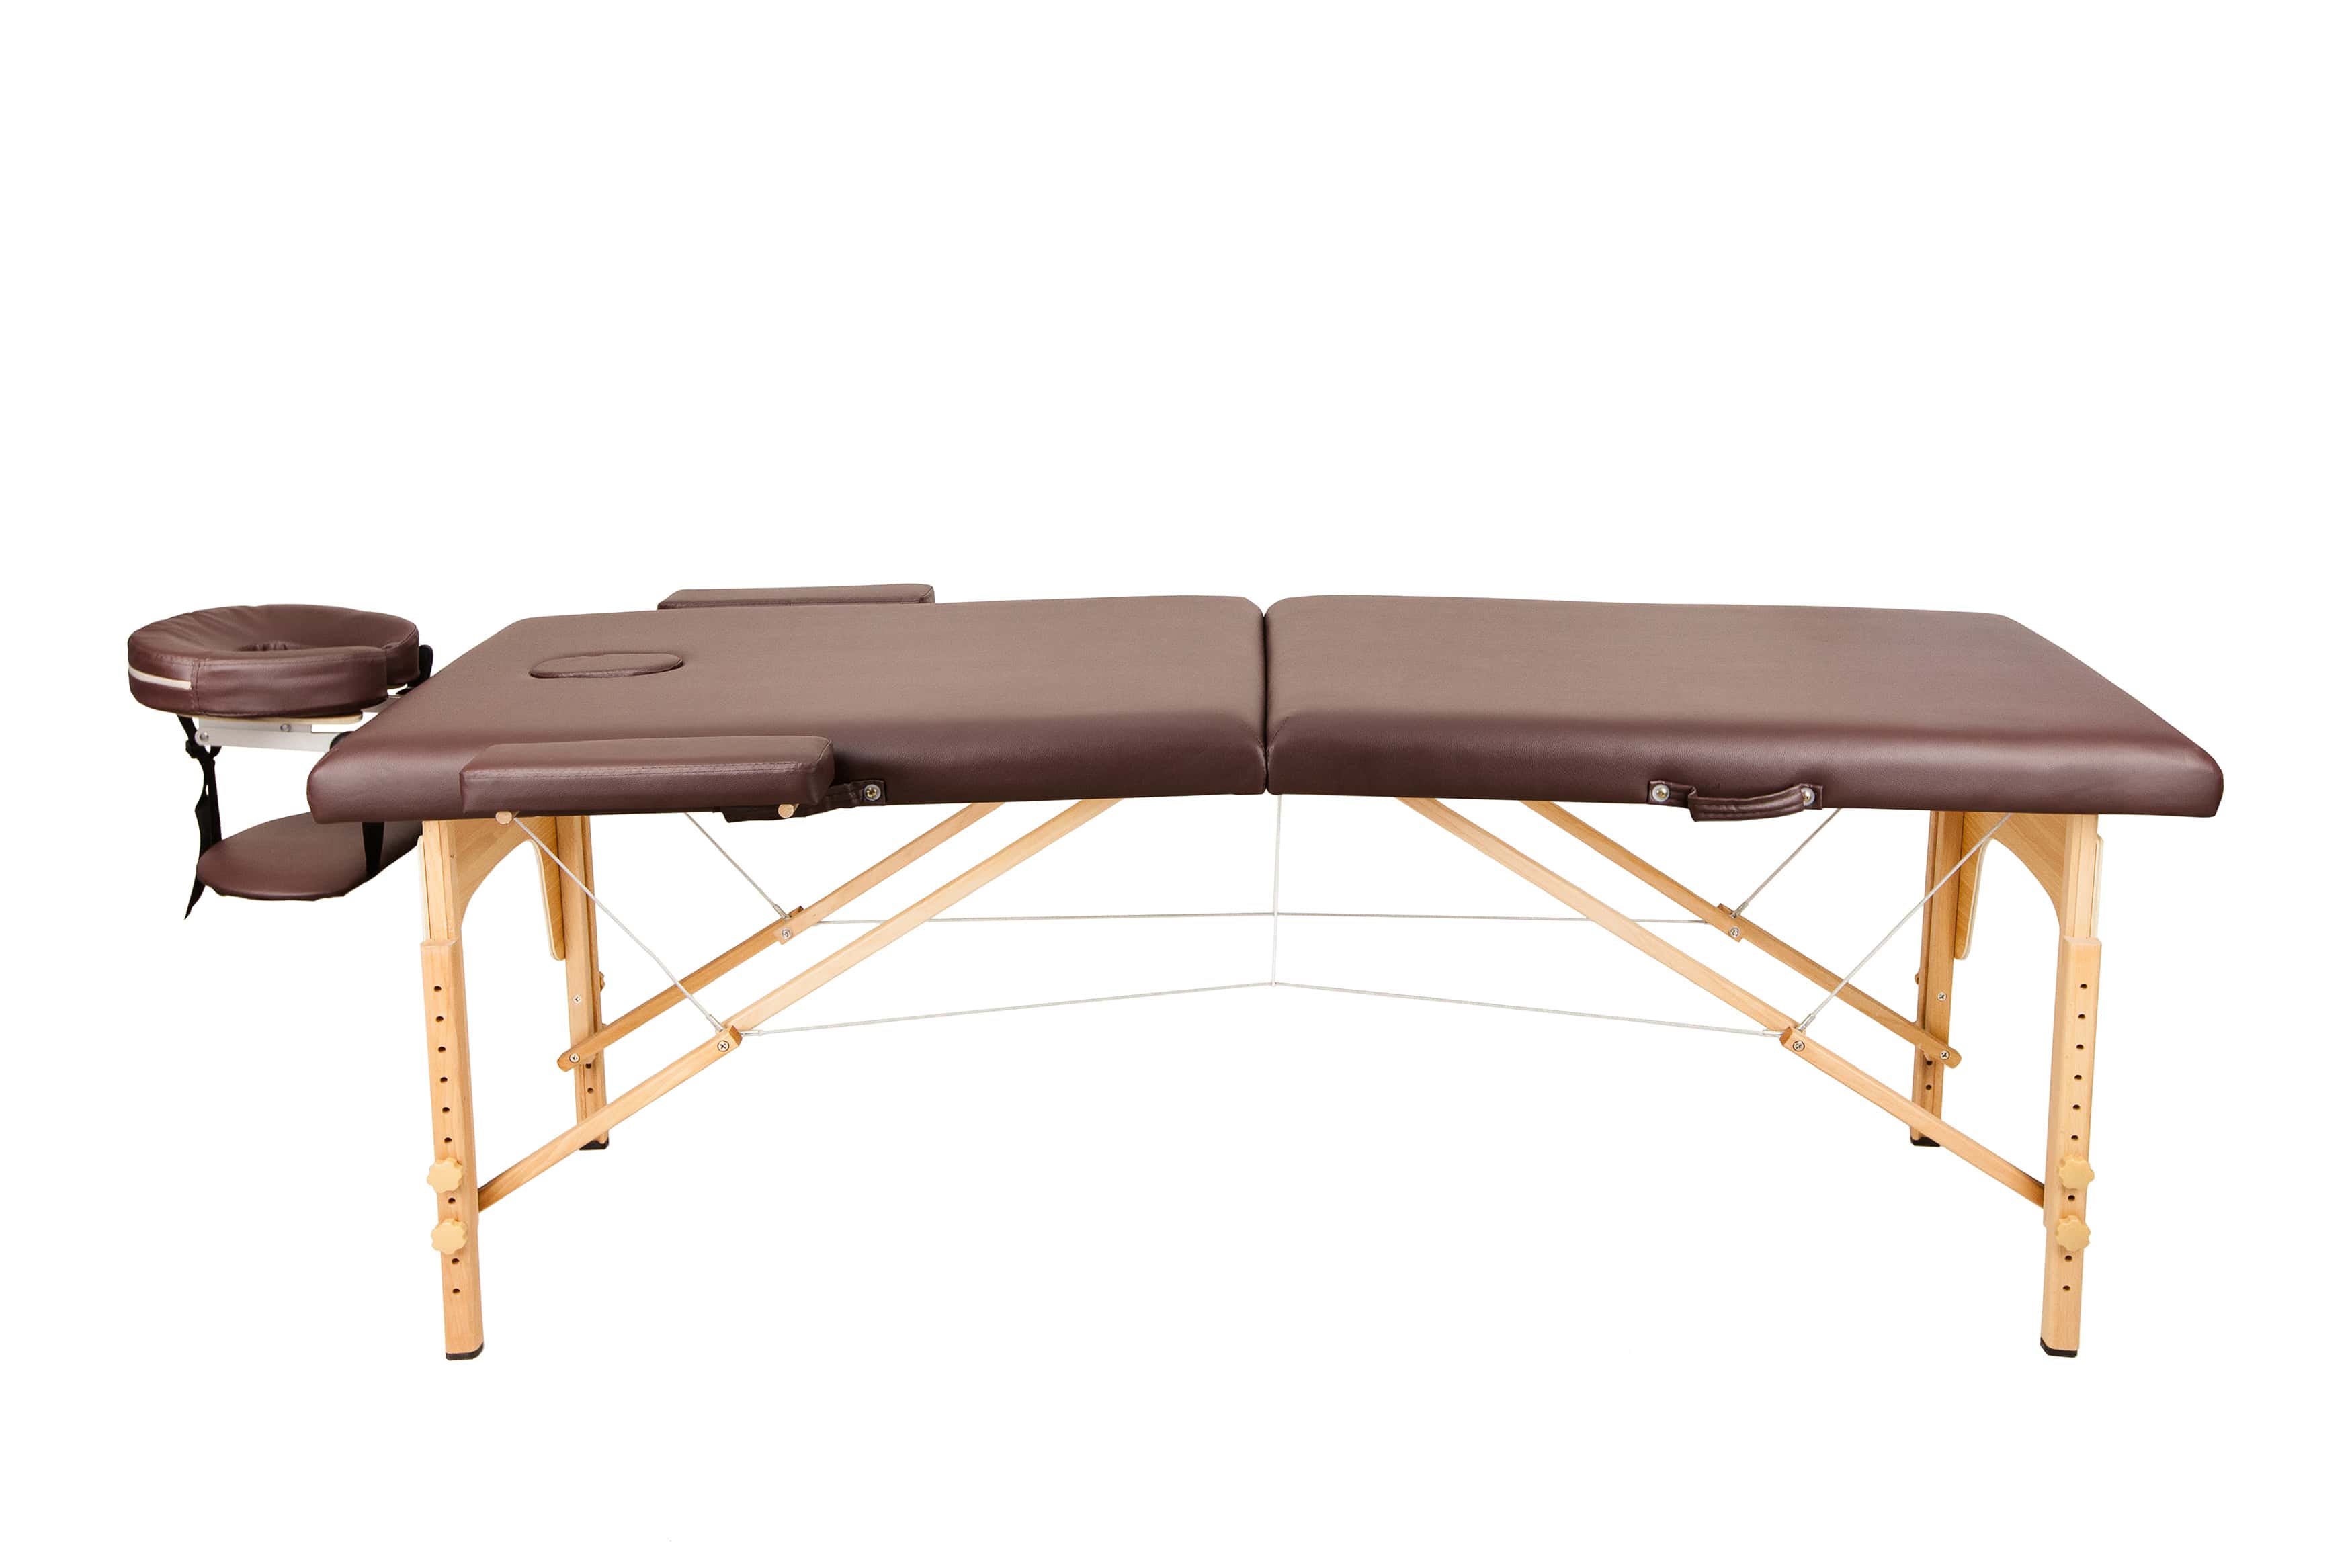 Складной массажный стол Atlas Sport 2-с, 70 см, деревянный (темно-коричневый)